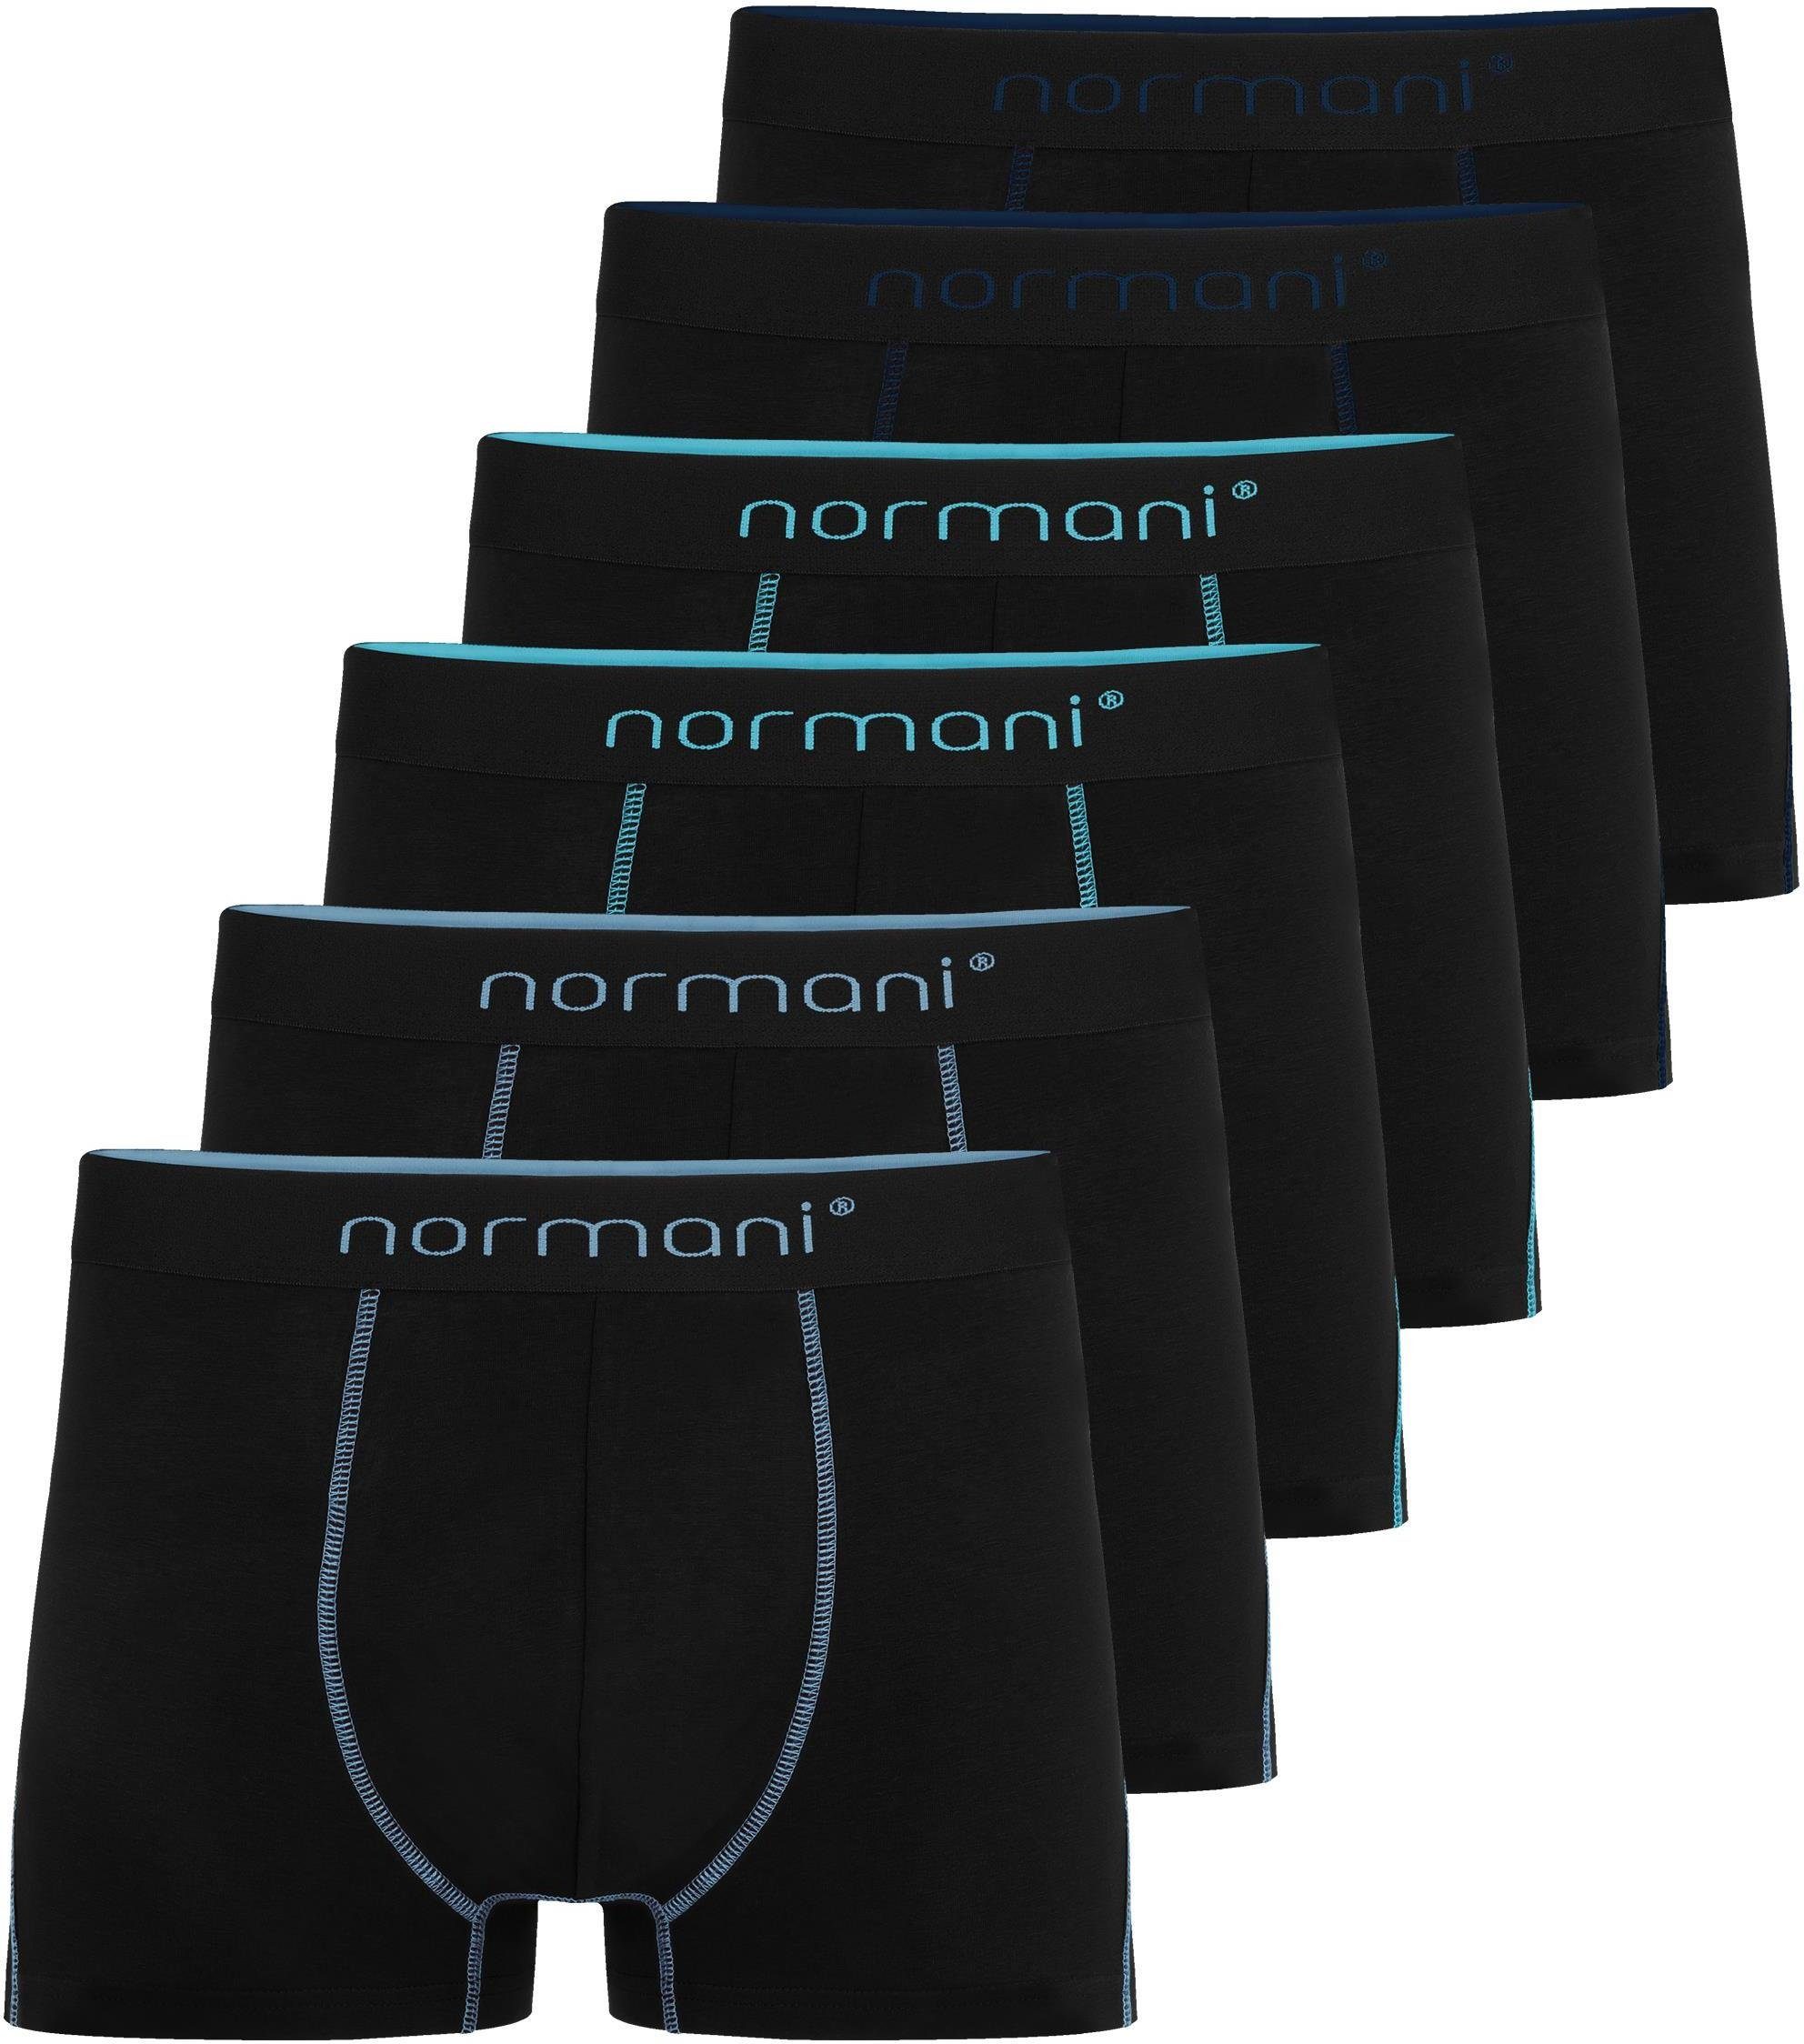 normani Boxershorts 6 Herren Baumwoll-Boxershorts Unterhose aus atmungsaktiver Baumwolle für Männer Dunkelblau/Hellblau/Türkis | Boxershorts